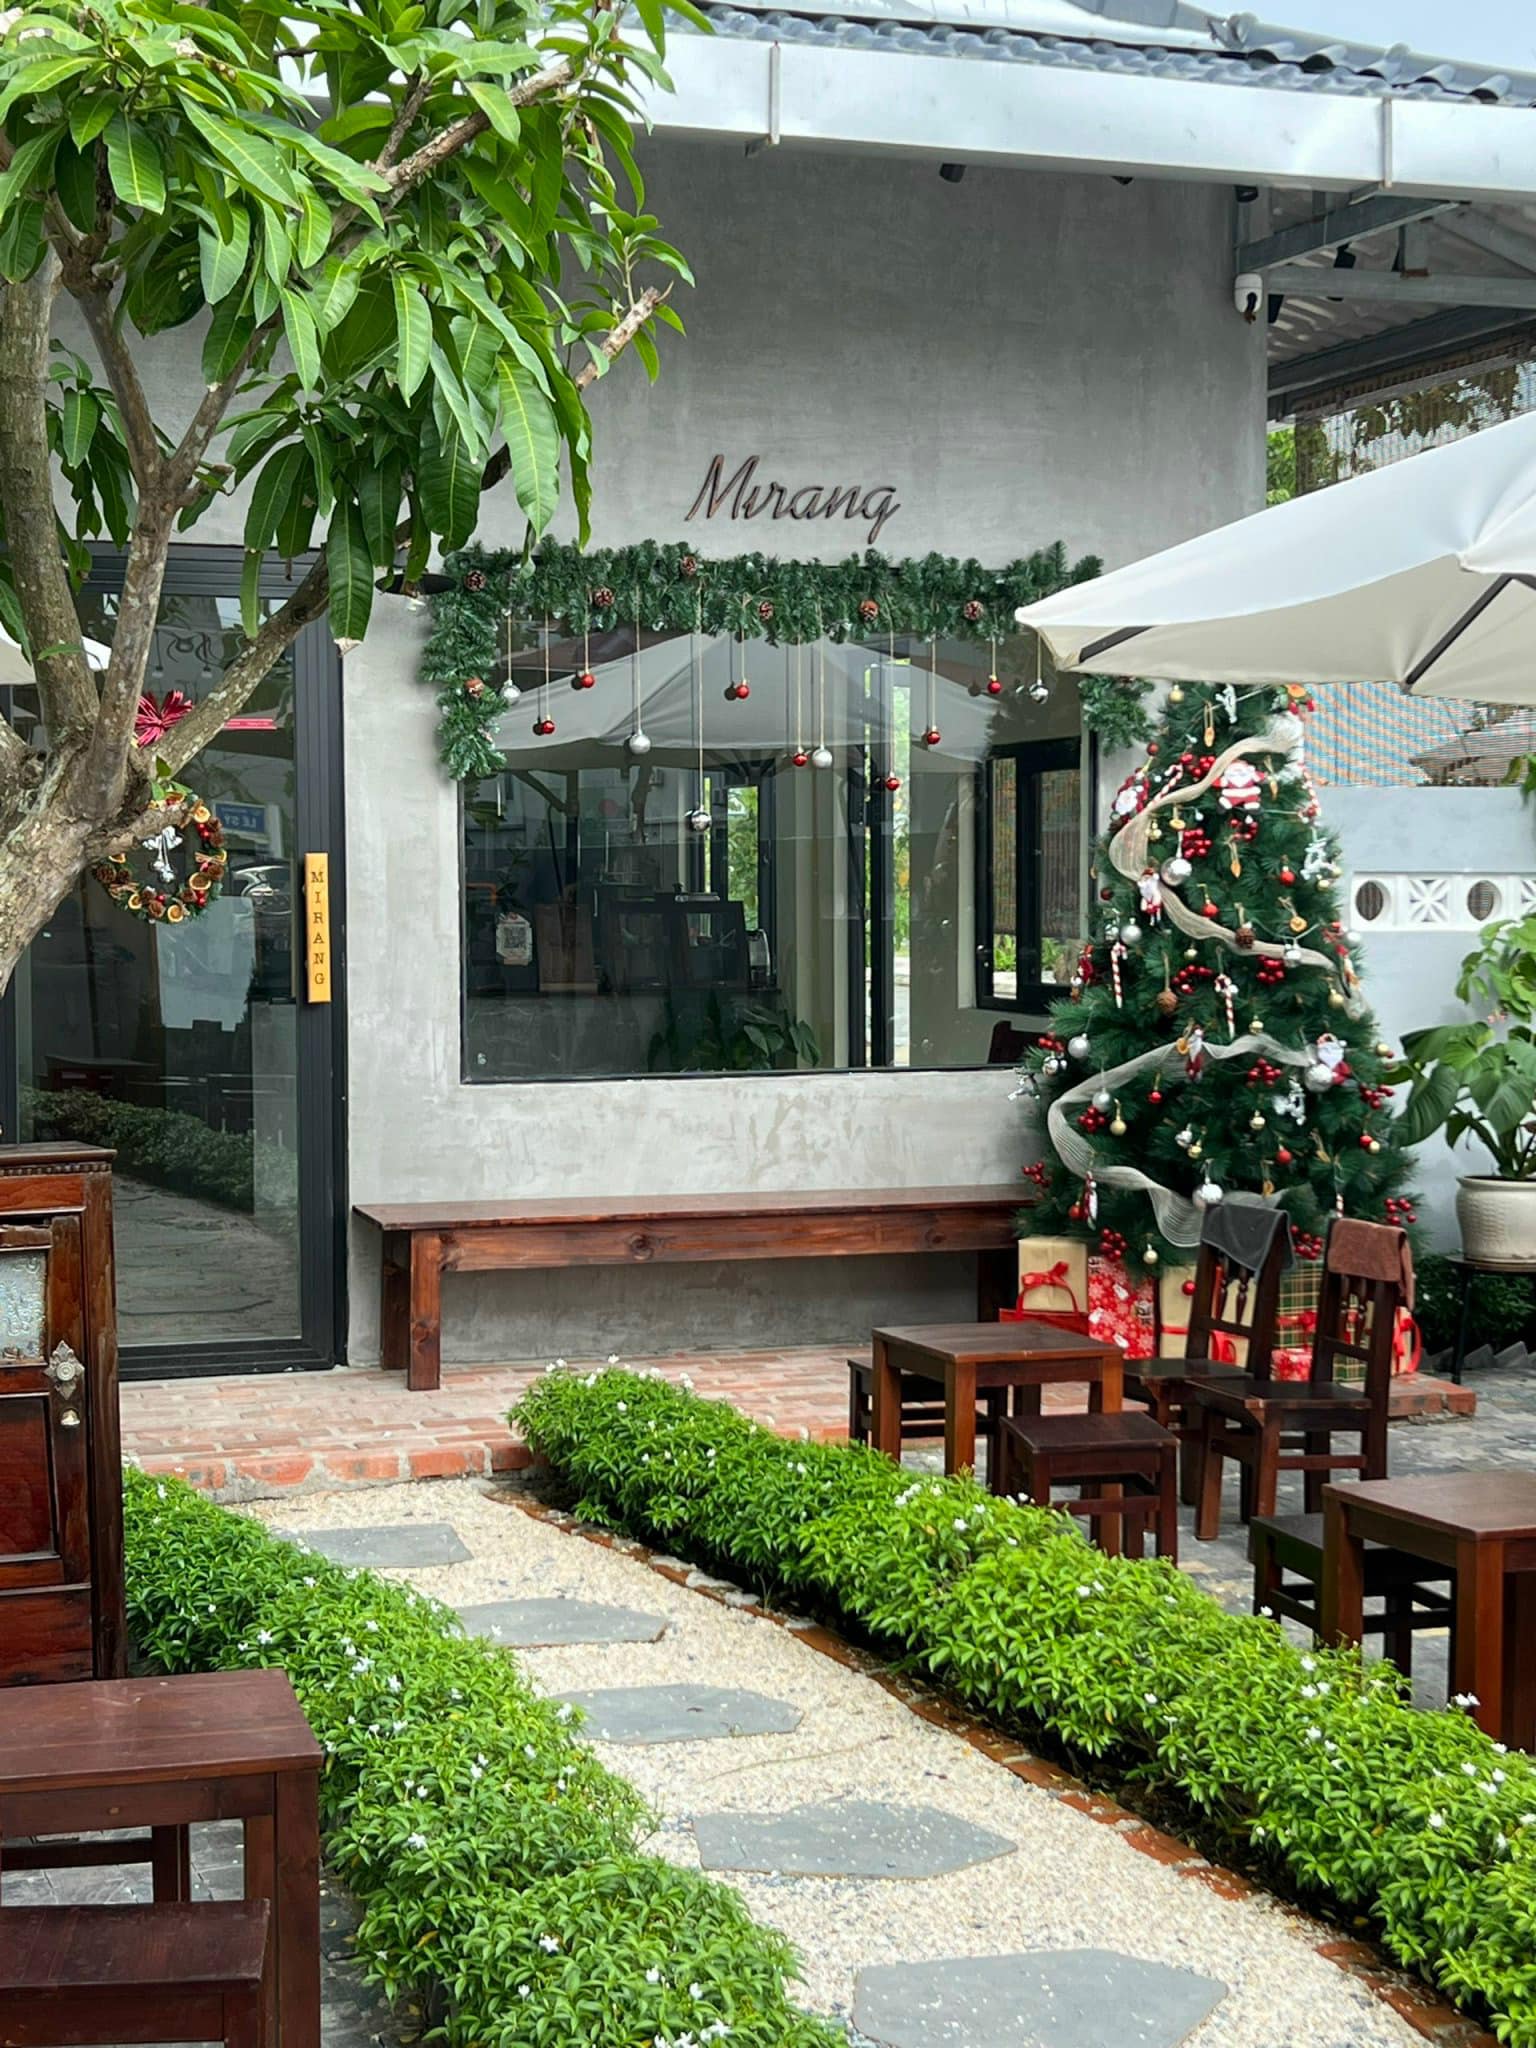 Mirang Cafe nằm trong khu dân cư yên tĩnh.